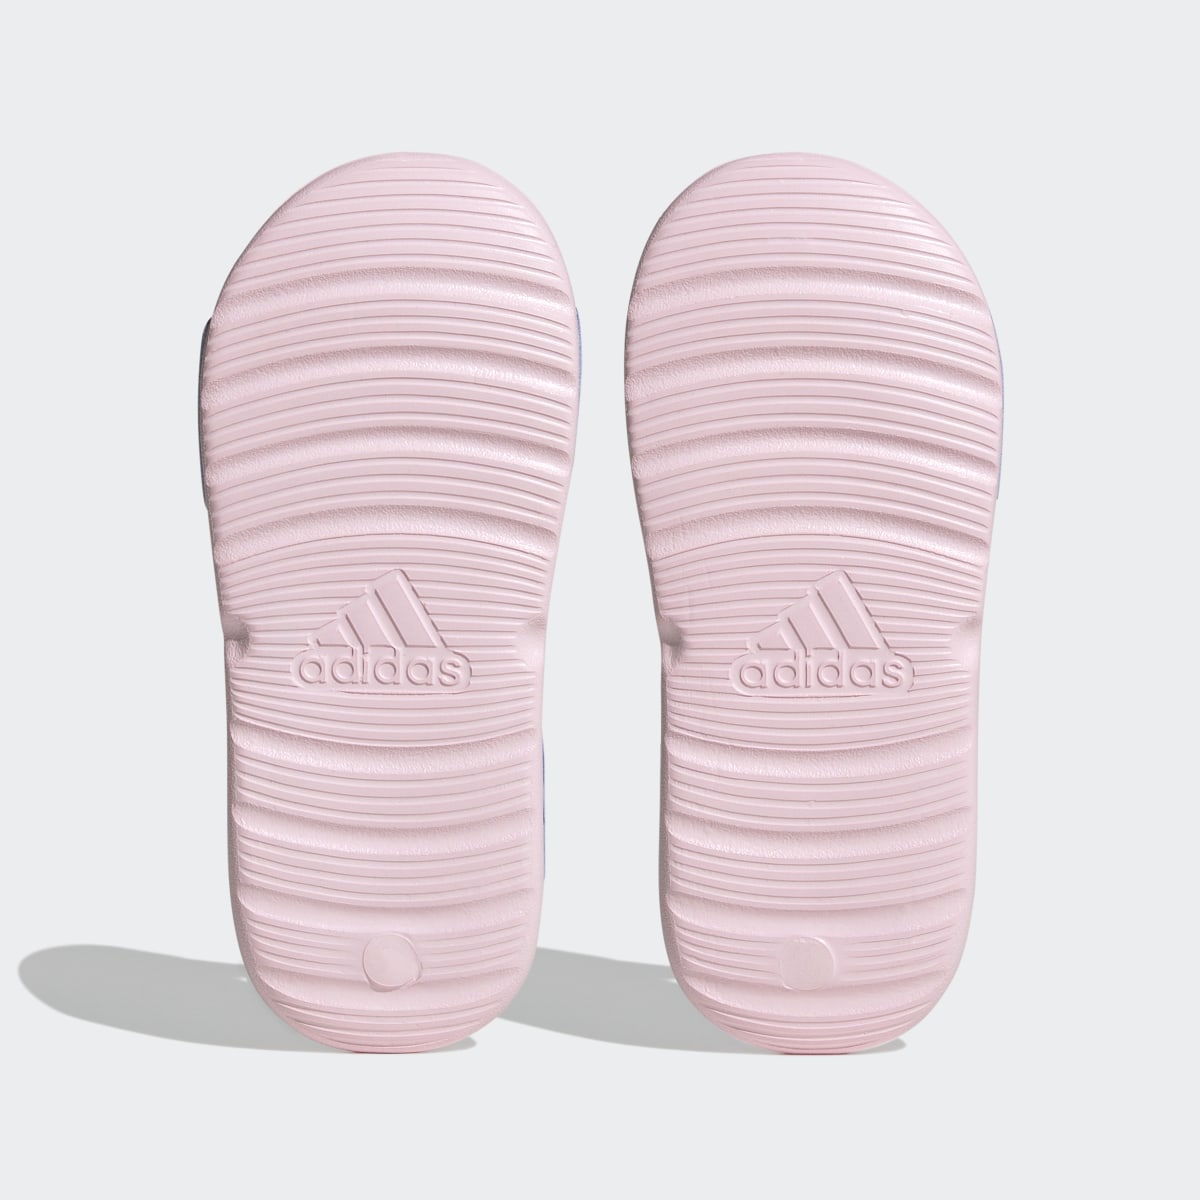 Adidas x Disney AltaSwim Moana Swim Sandals. 4